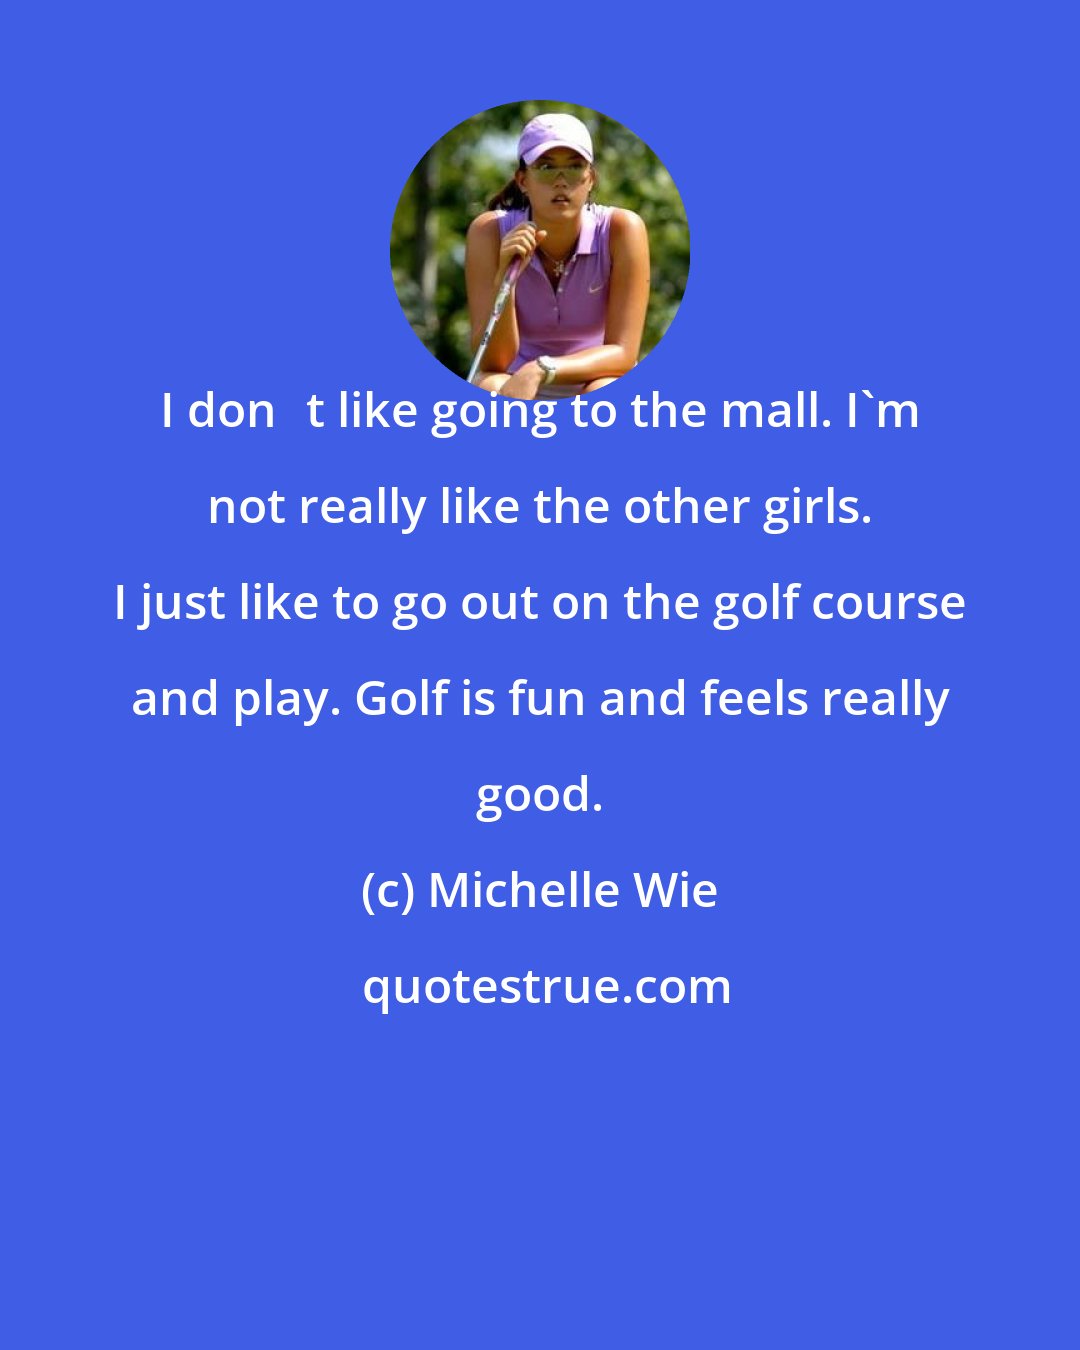 Michelle Wie: I dont like going to the mall. I'm not really like the other girls. I just like to go out on the golf course and play. Golf is fun and feels really good.